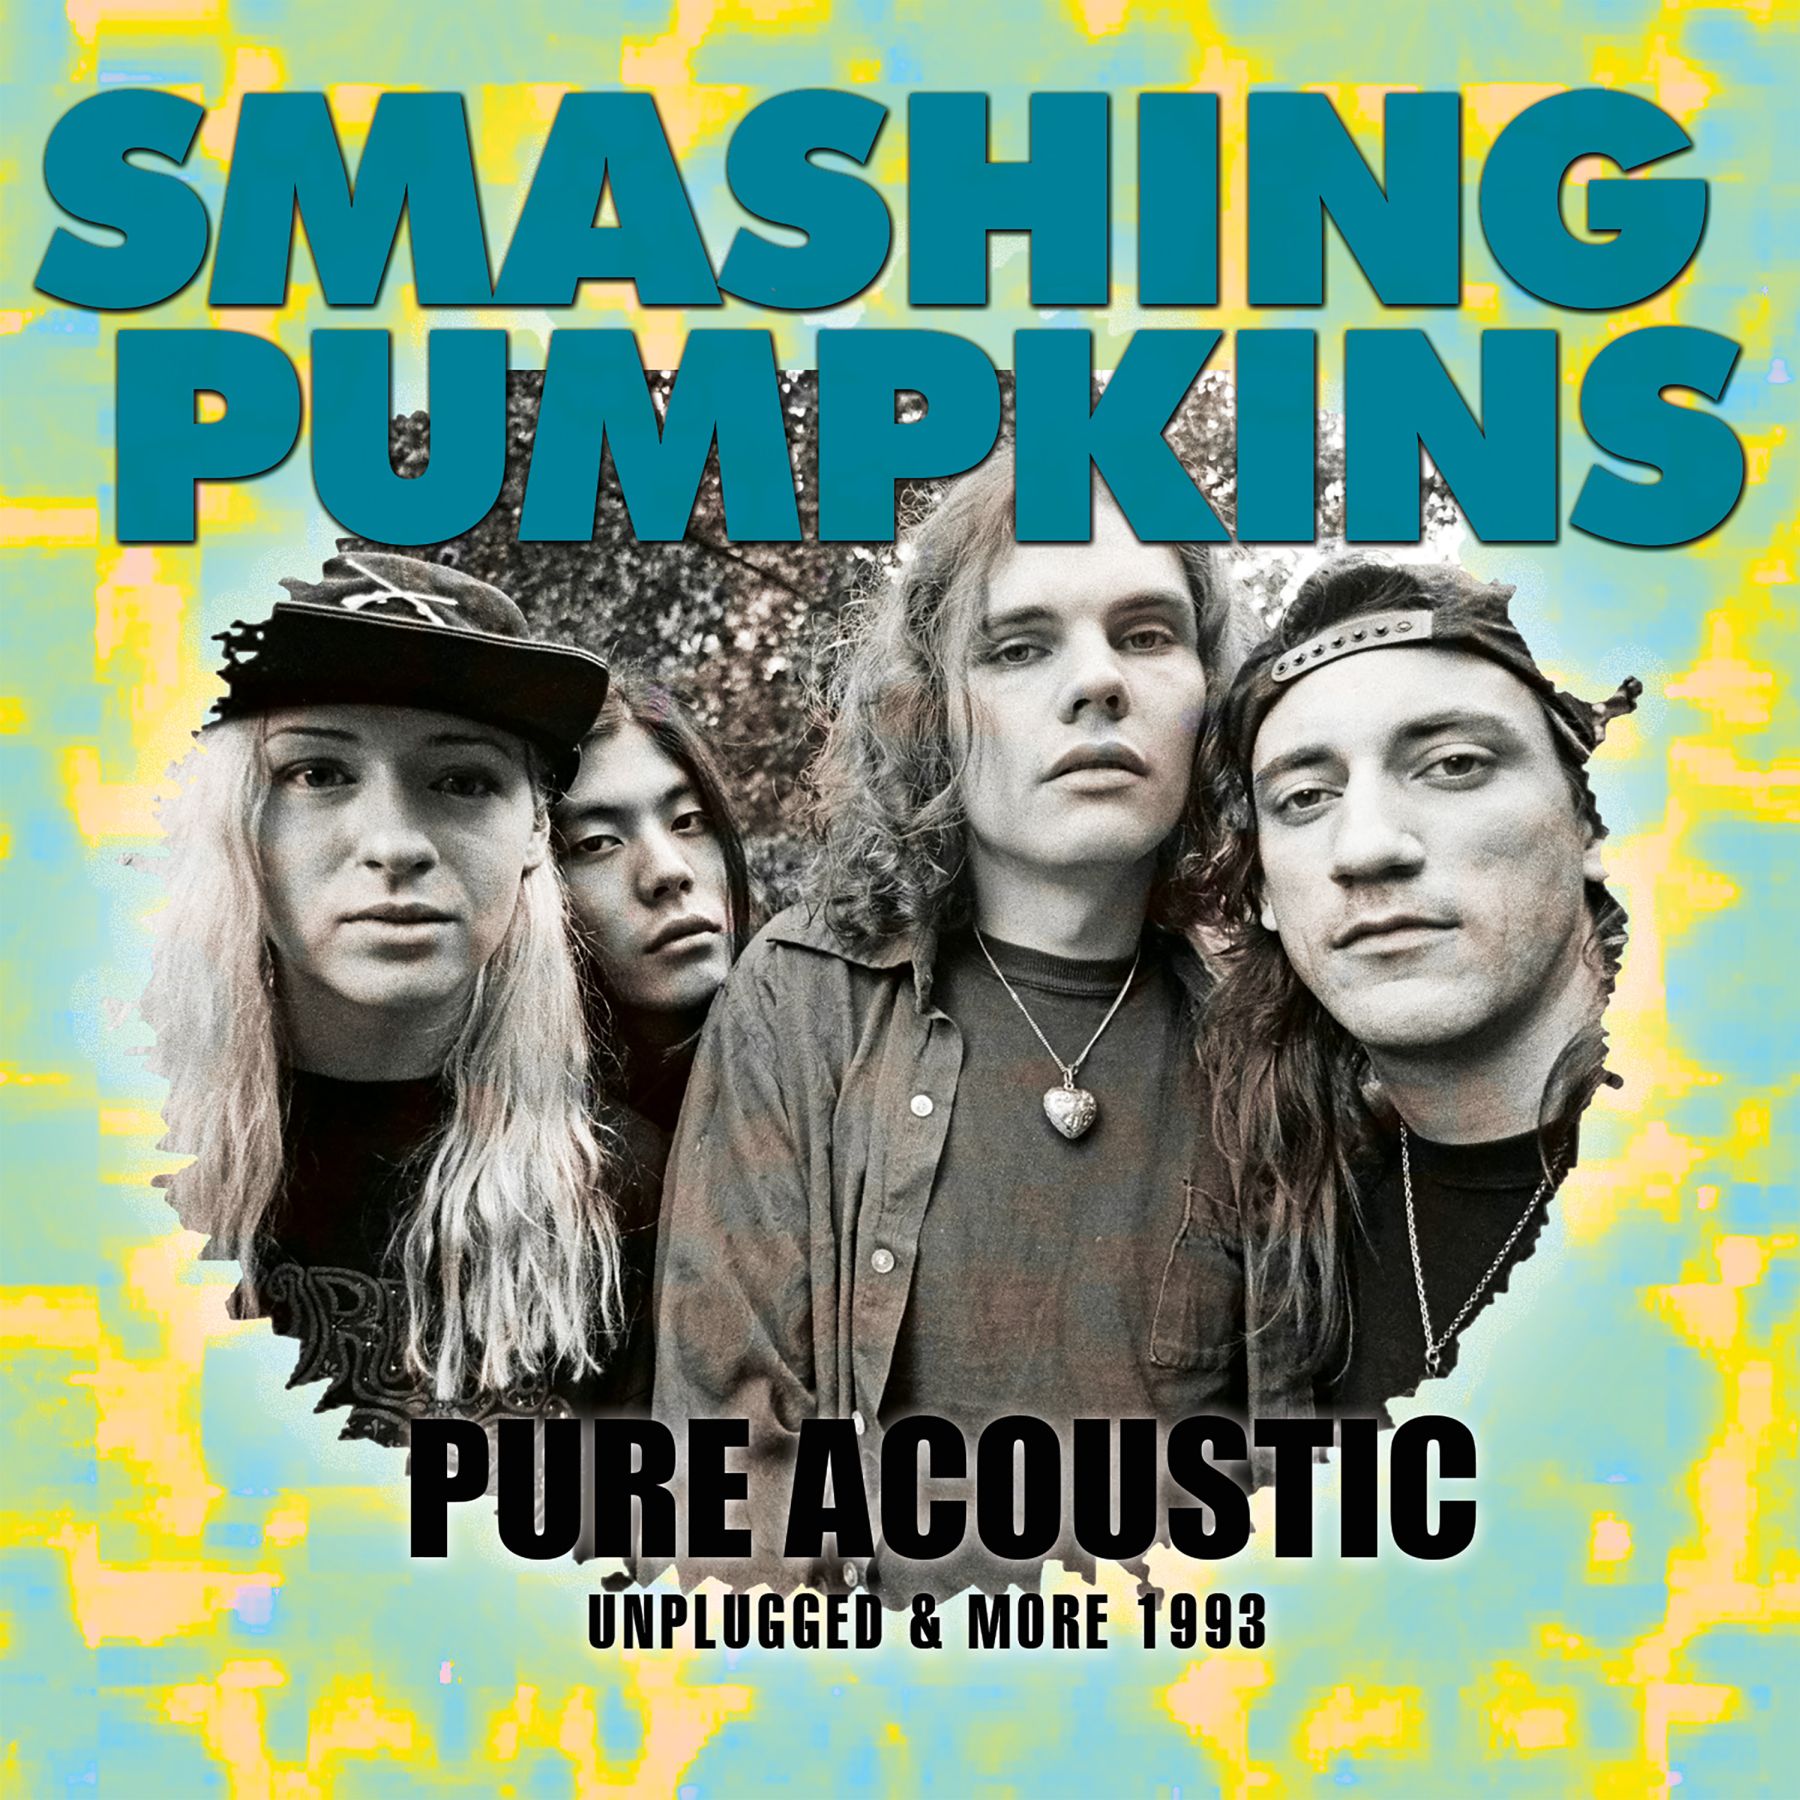 The Smashing Pumpkins альбомы. Smashing Pumpkins album. Smashing Pumpkins Mellon Collie and the Infinite Sadness. Today smash